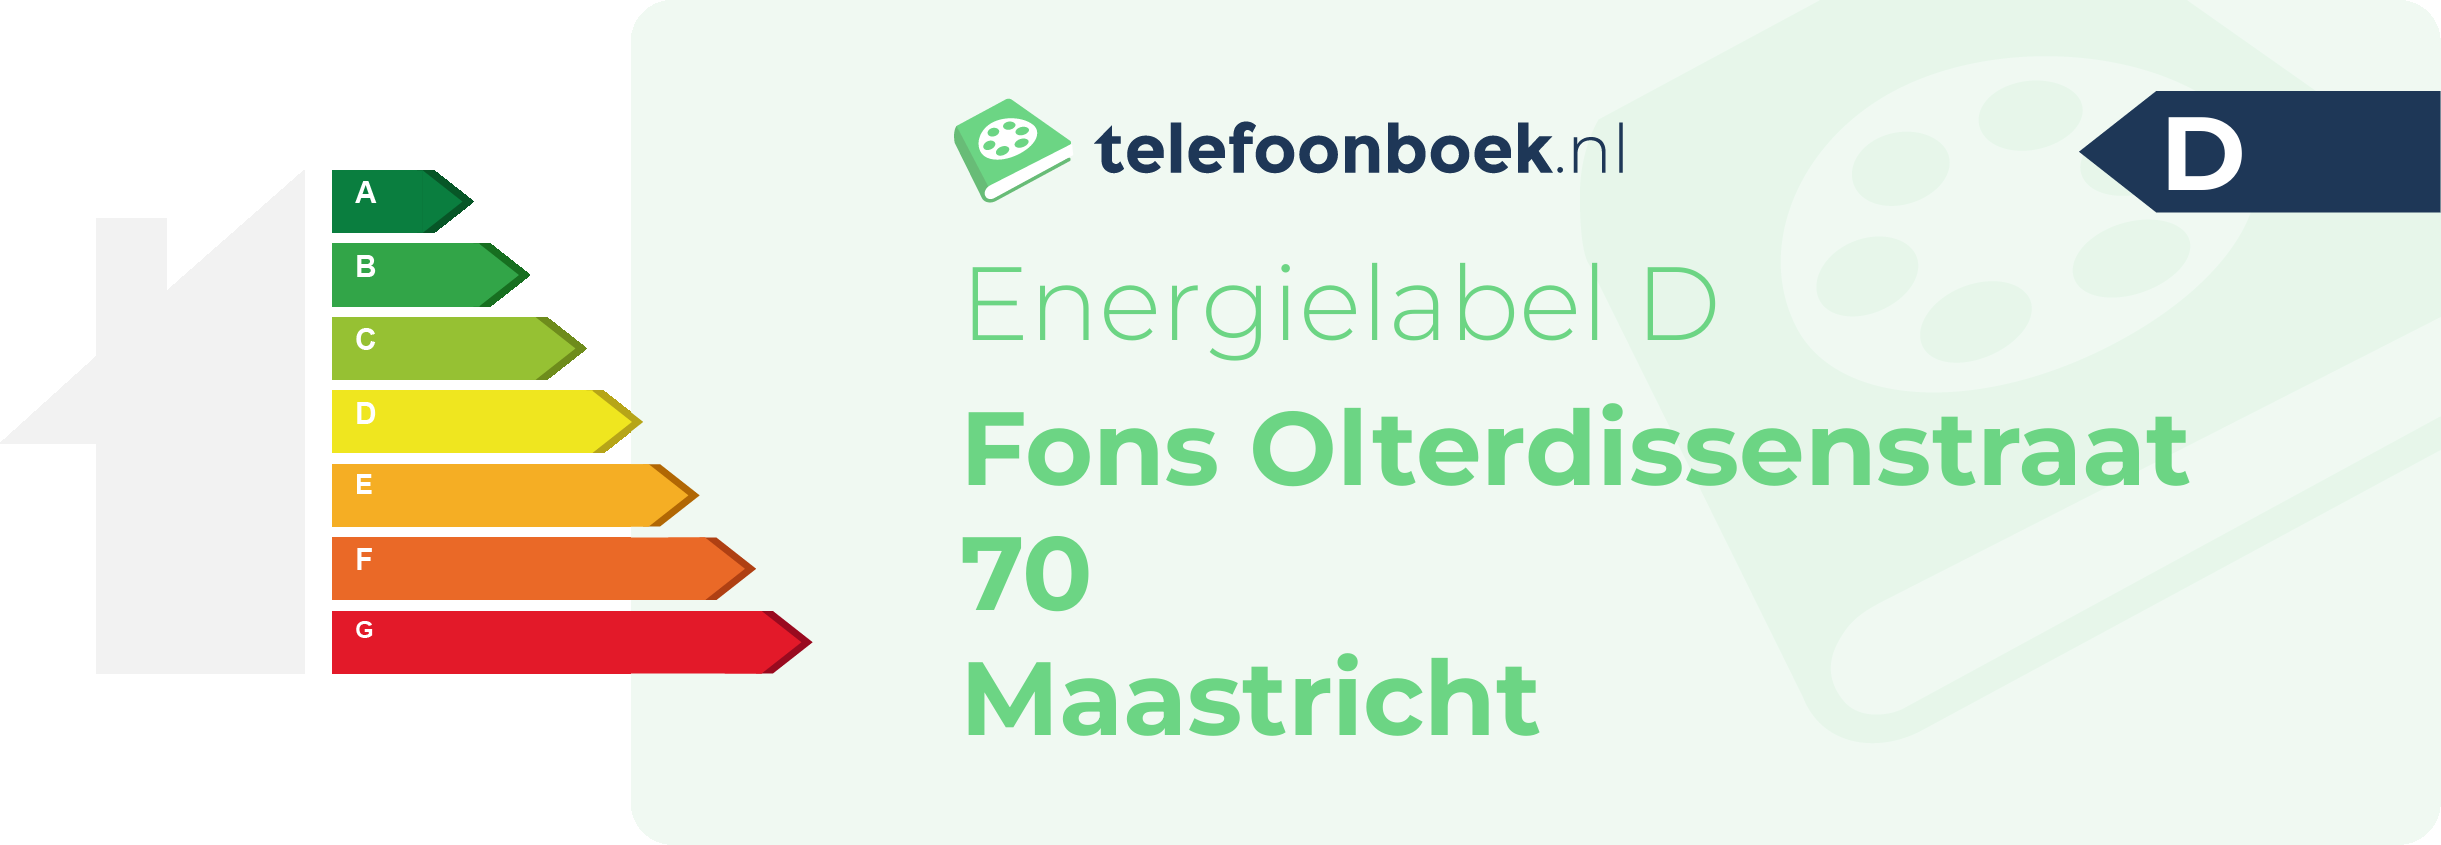 Energielabel Fons Olterdissenstraat 70 Maastricht